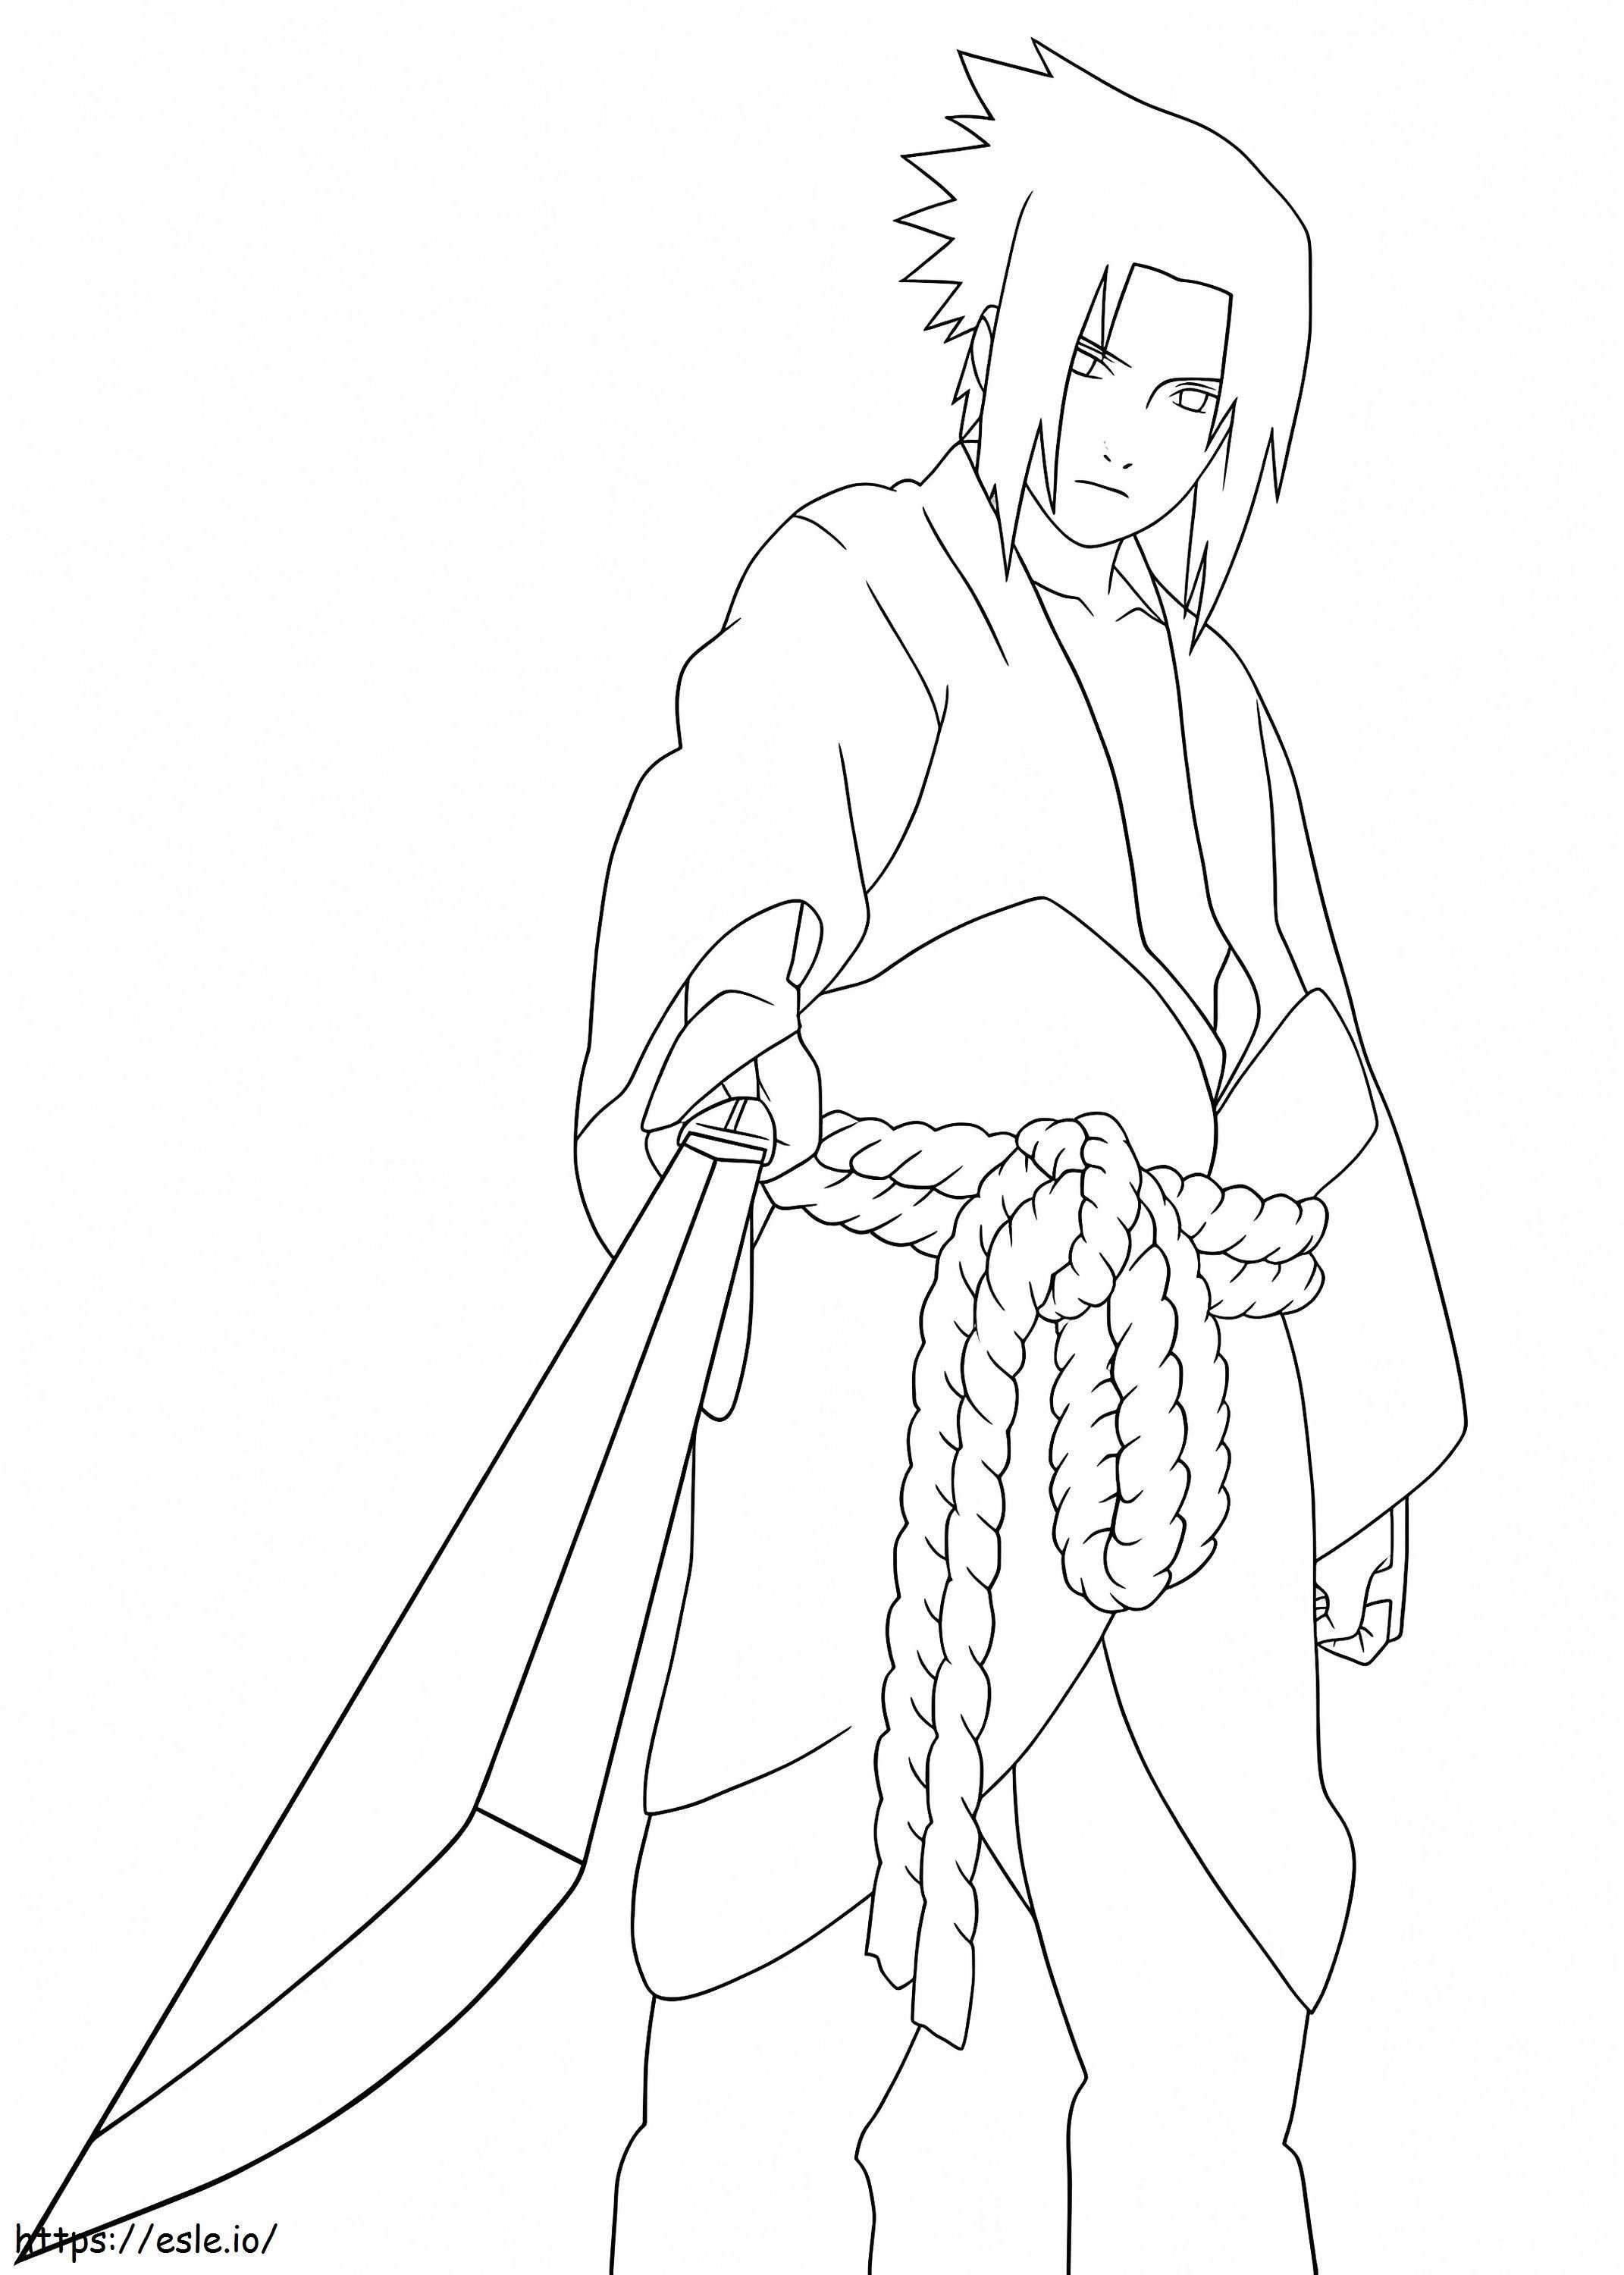  Sasuke mit Schwert A4 ausmalbilder